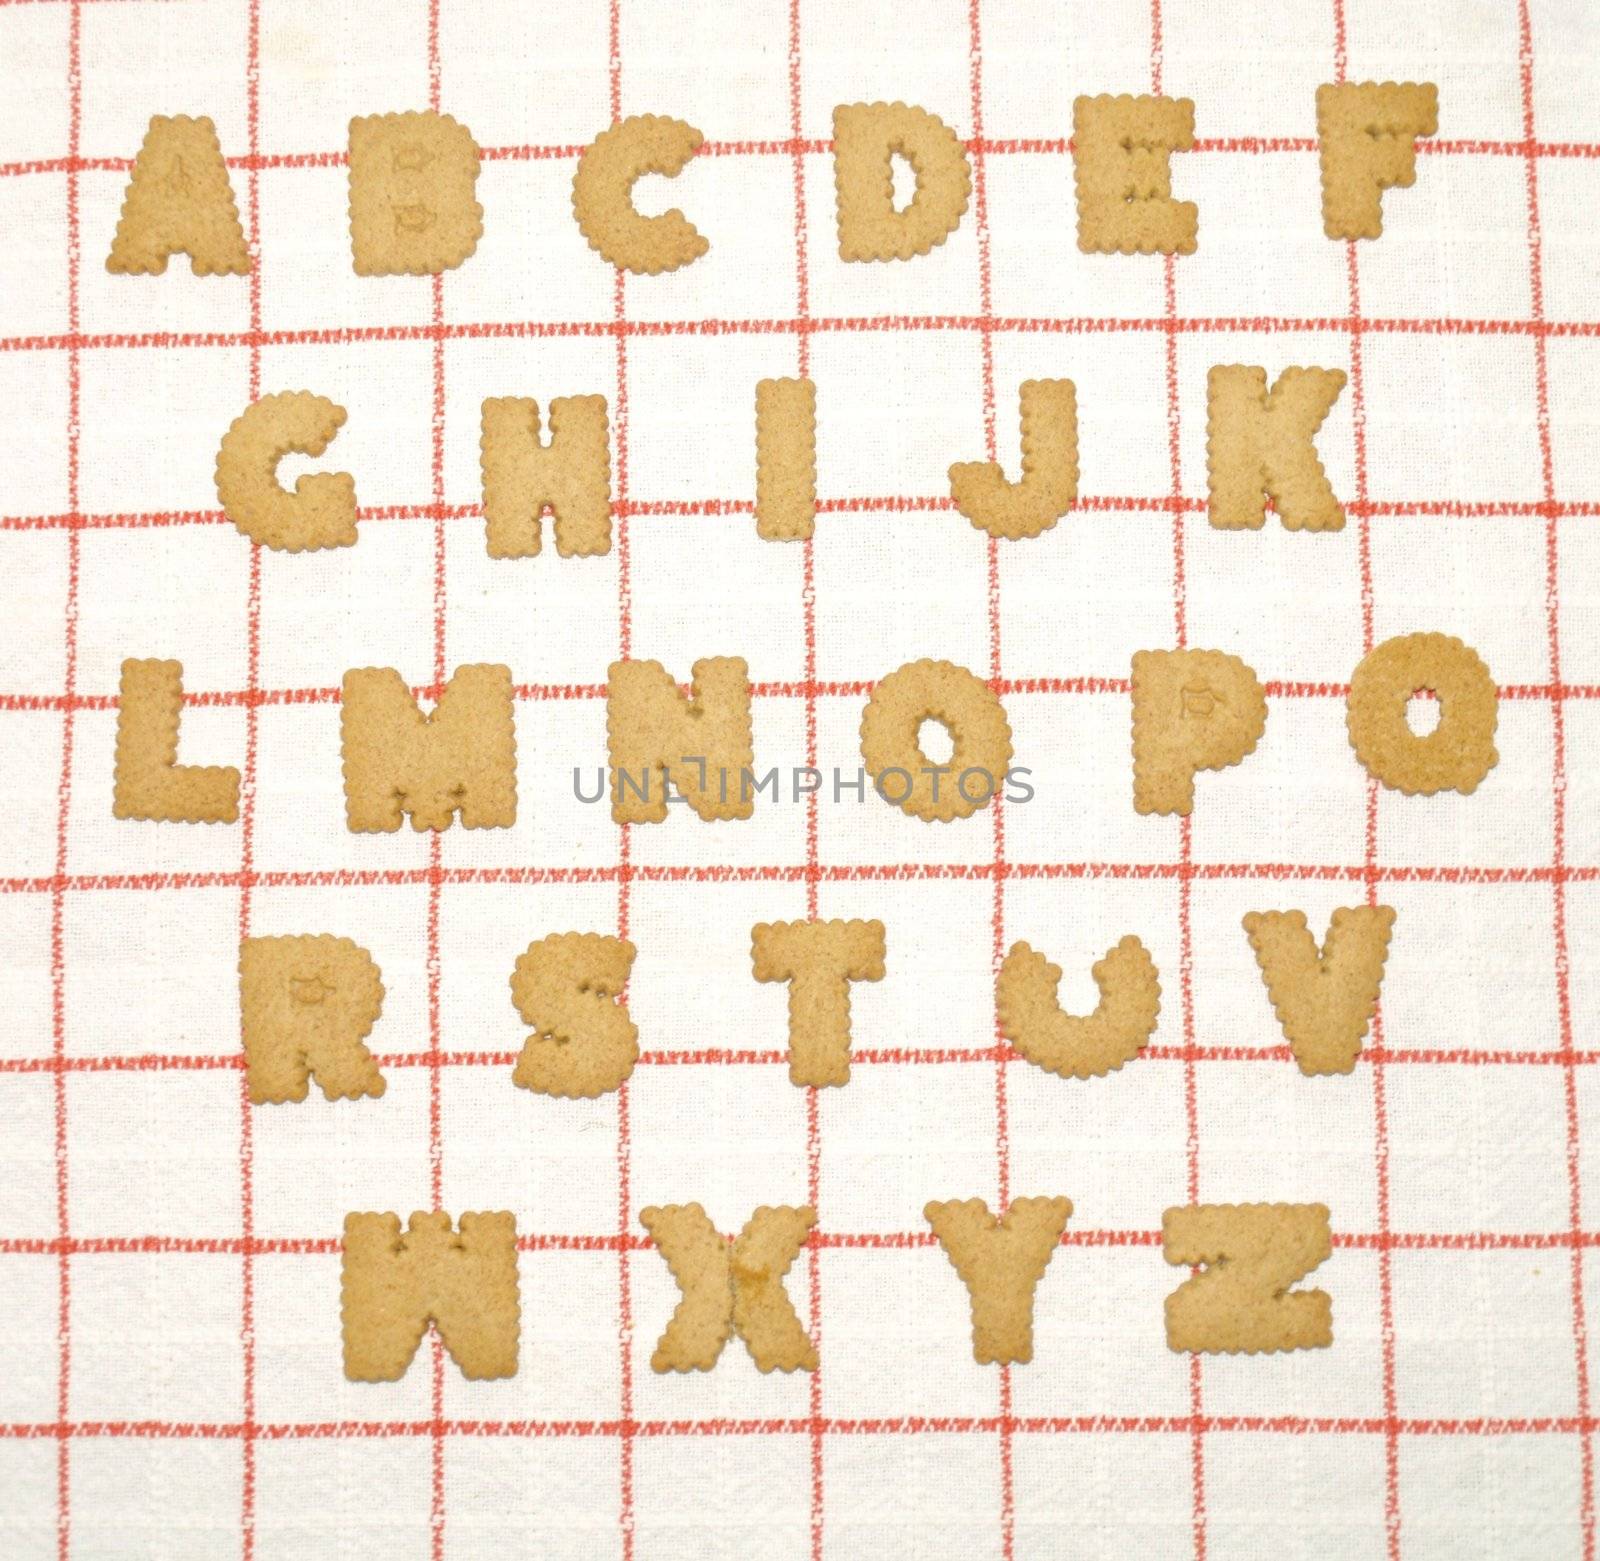 Alphabet written with bisquits